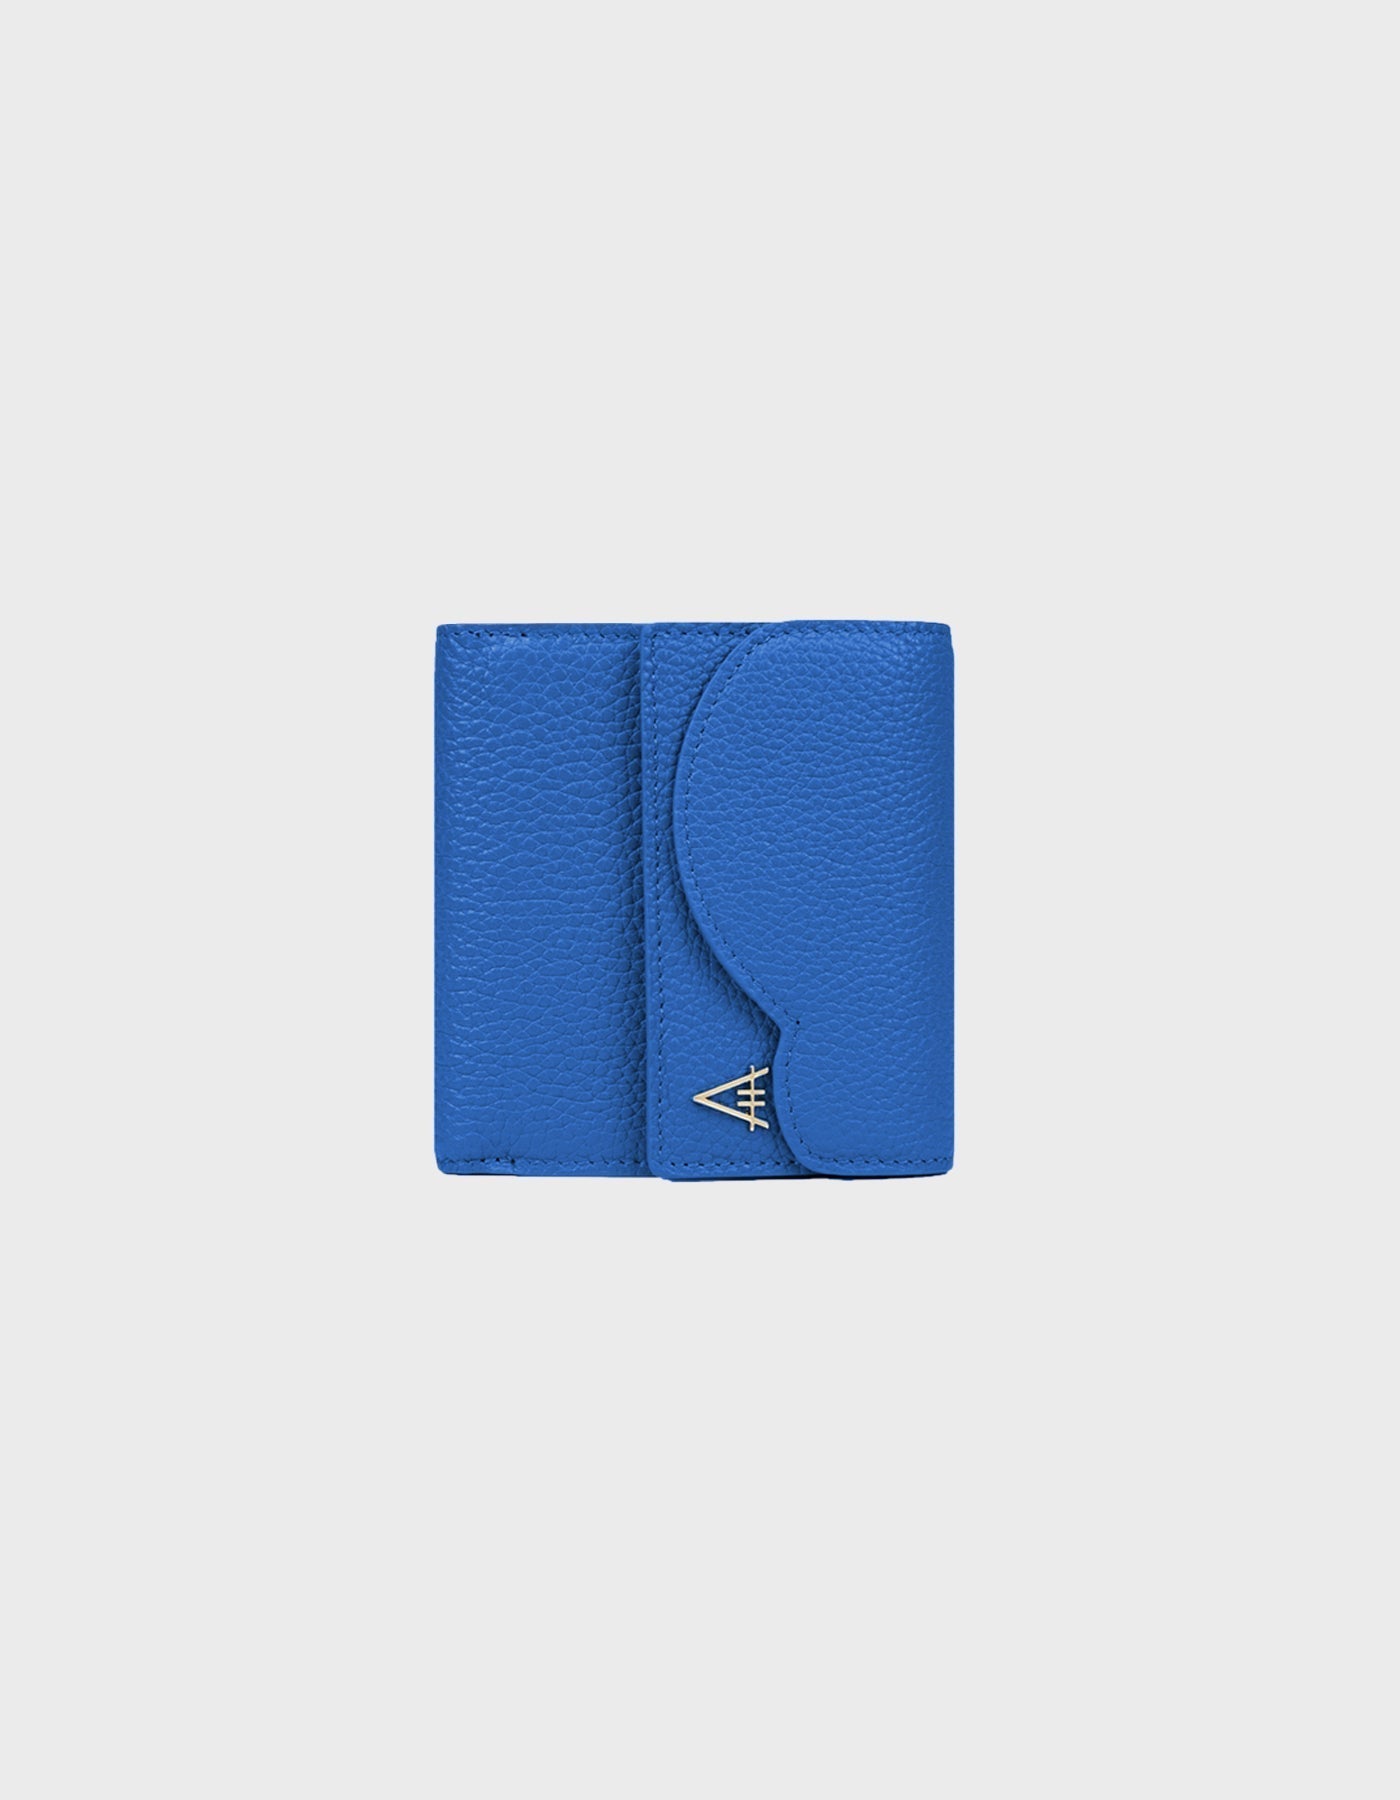 HiVa Atelier - Larus Compact Wallet Parliament